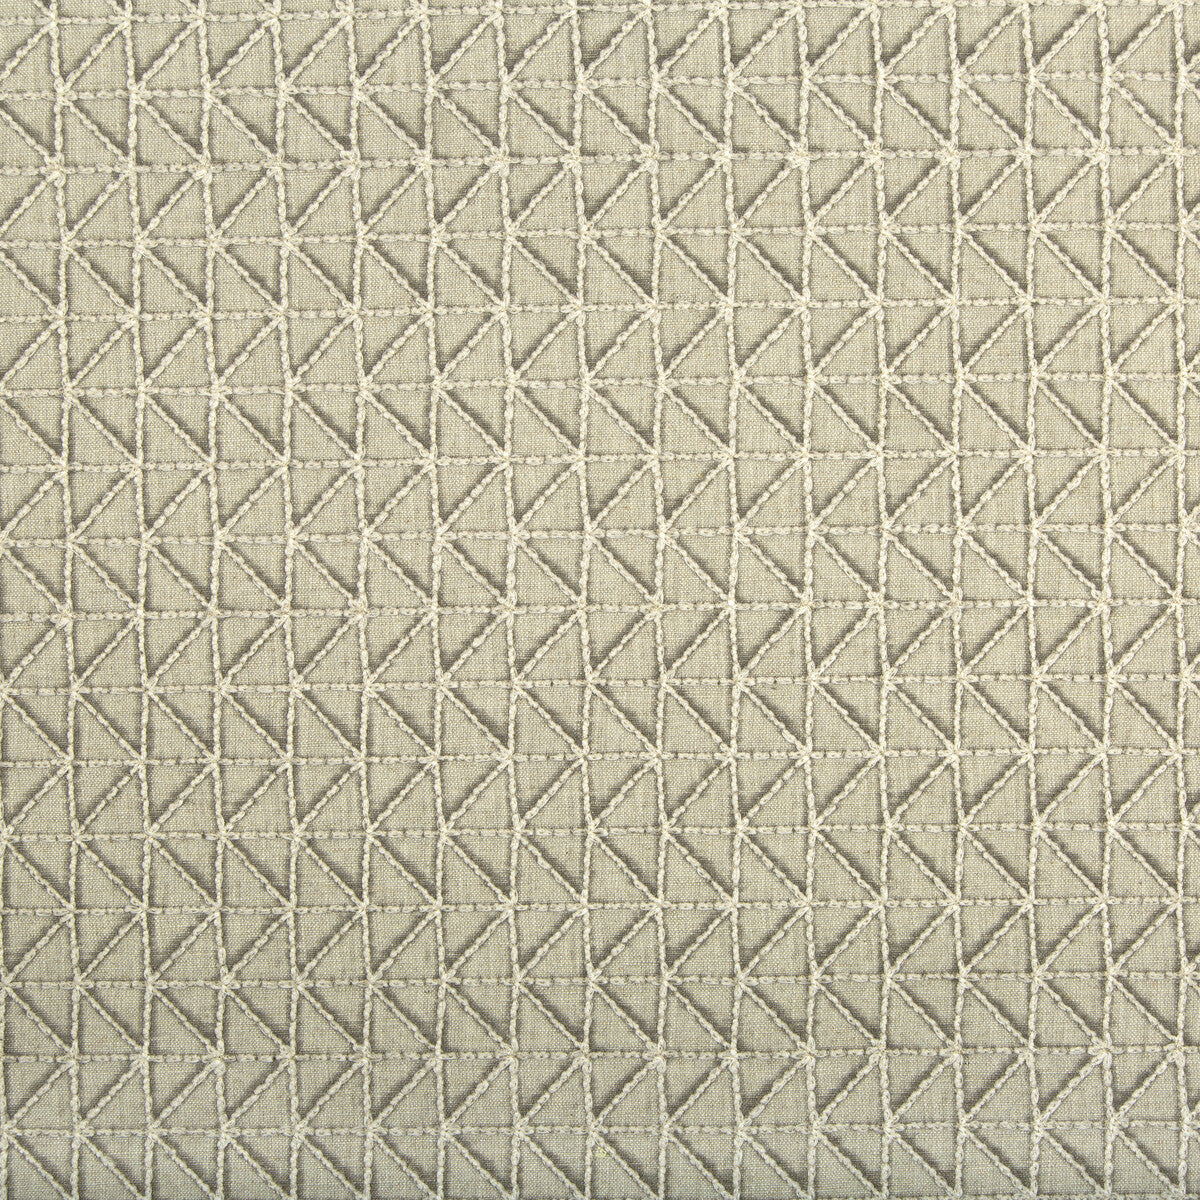 Kravet Basics fabric in 36129-16 color - pattern 36129.16.0 - by Kravet Basics